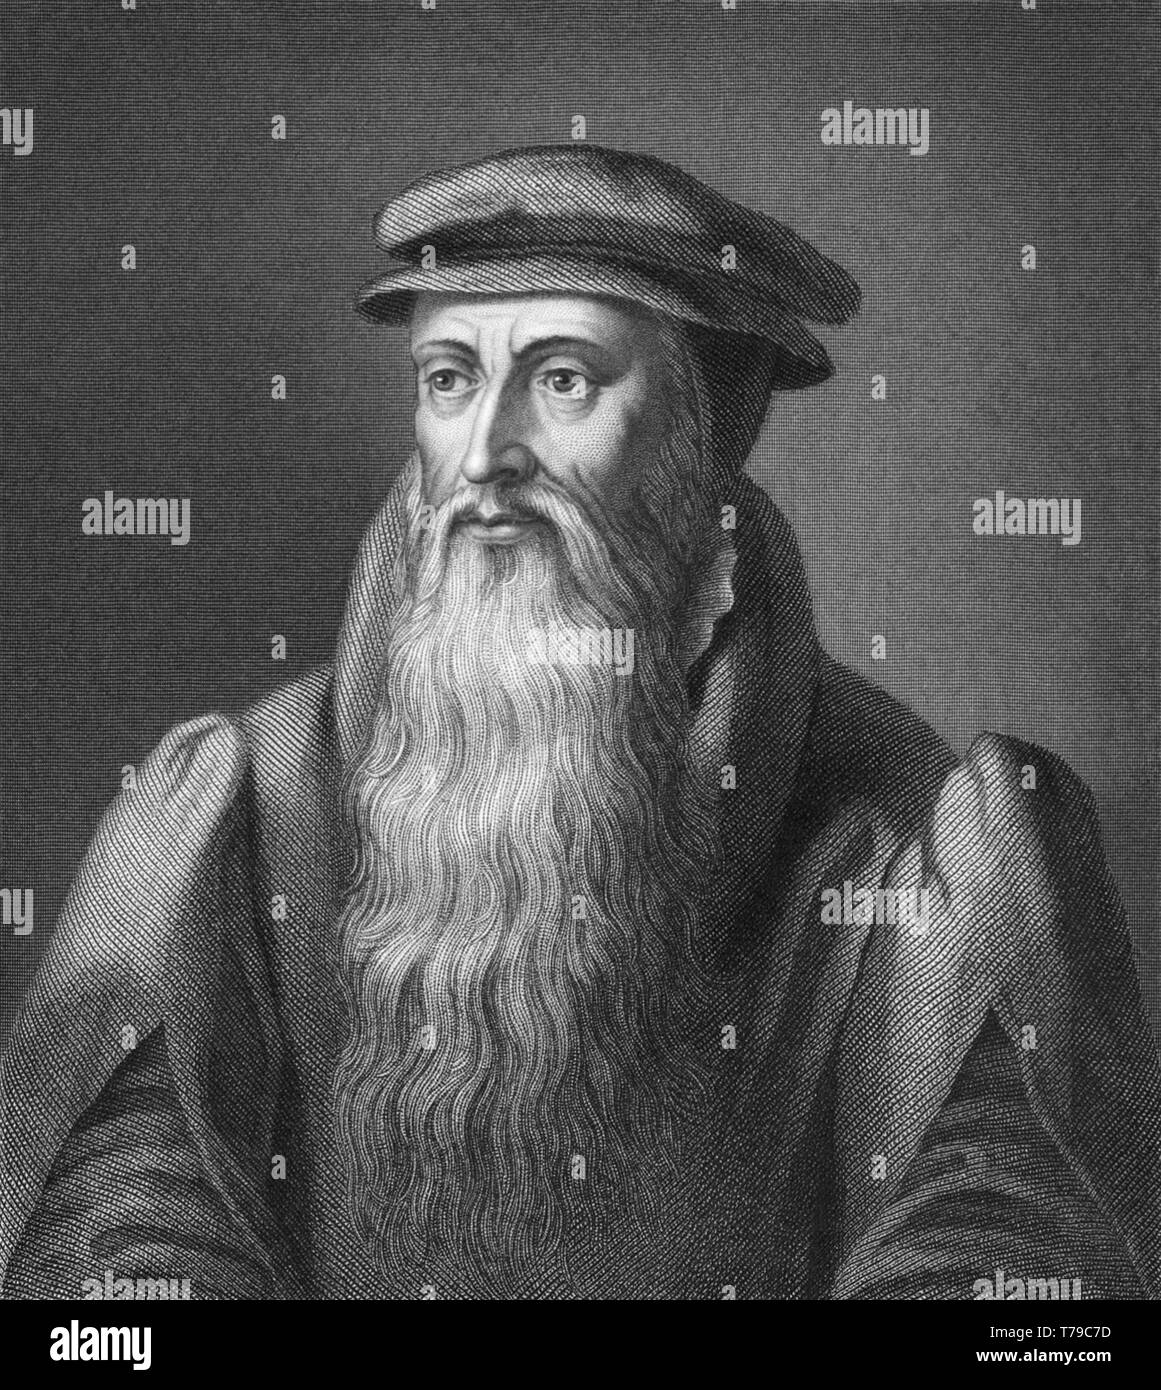 John Knox (c1513-1572) était un ministre écossais, théologien et écrivain qui a été un chef de file de la réforme en Écosse et fut le fondateur de l'Église presbytérienne d'Écosse. Banque D'Images